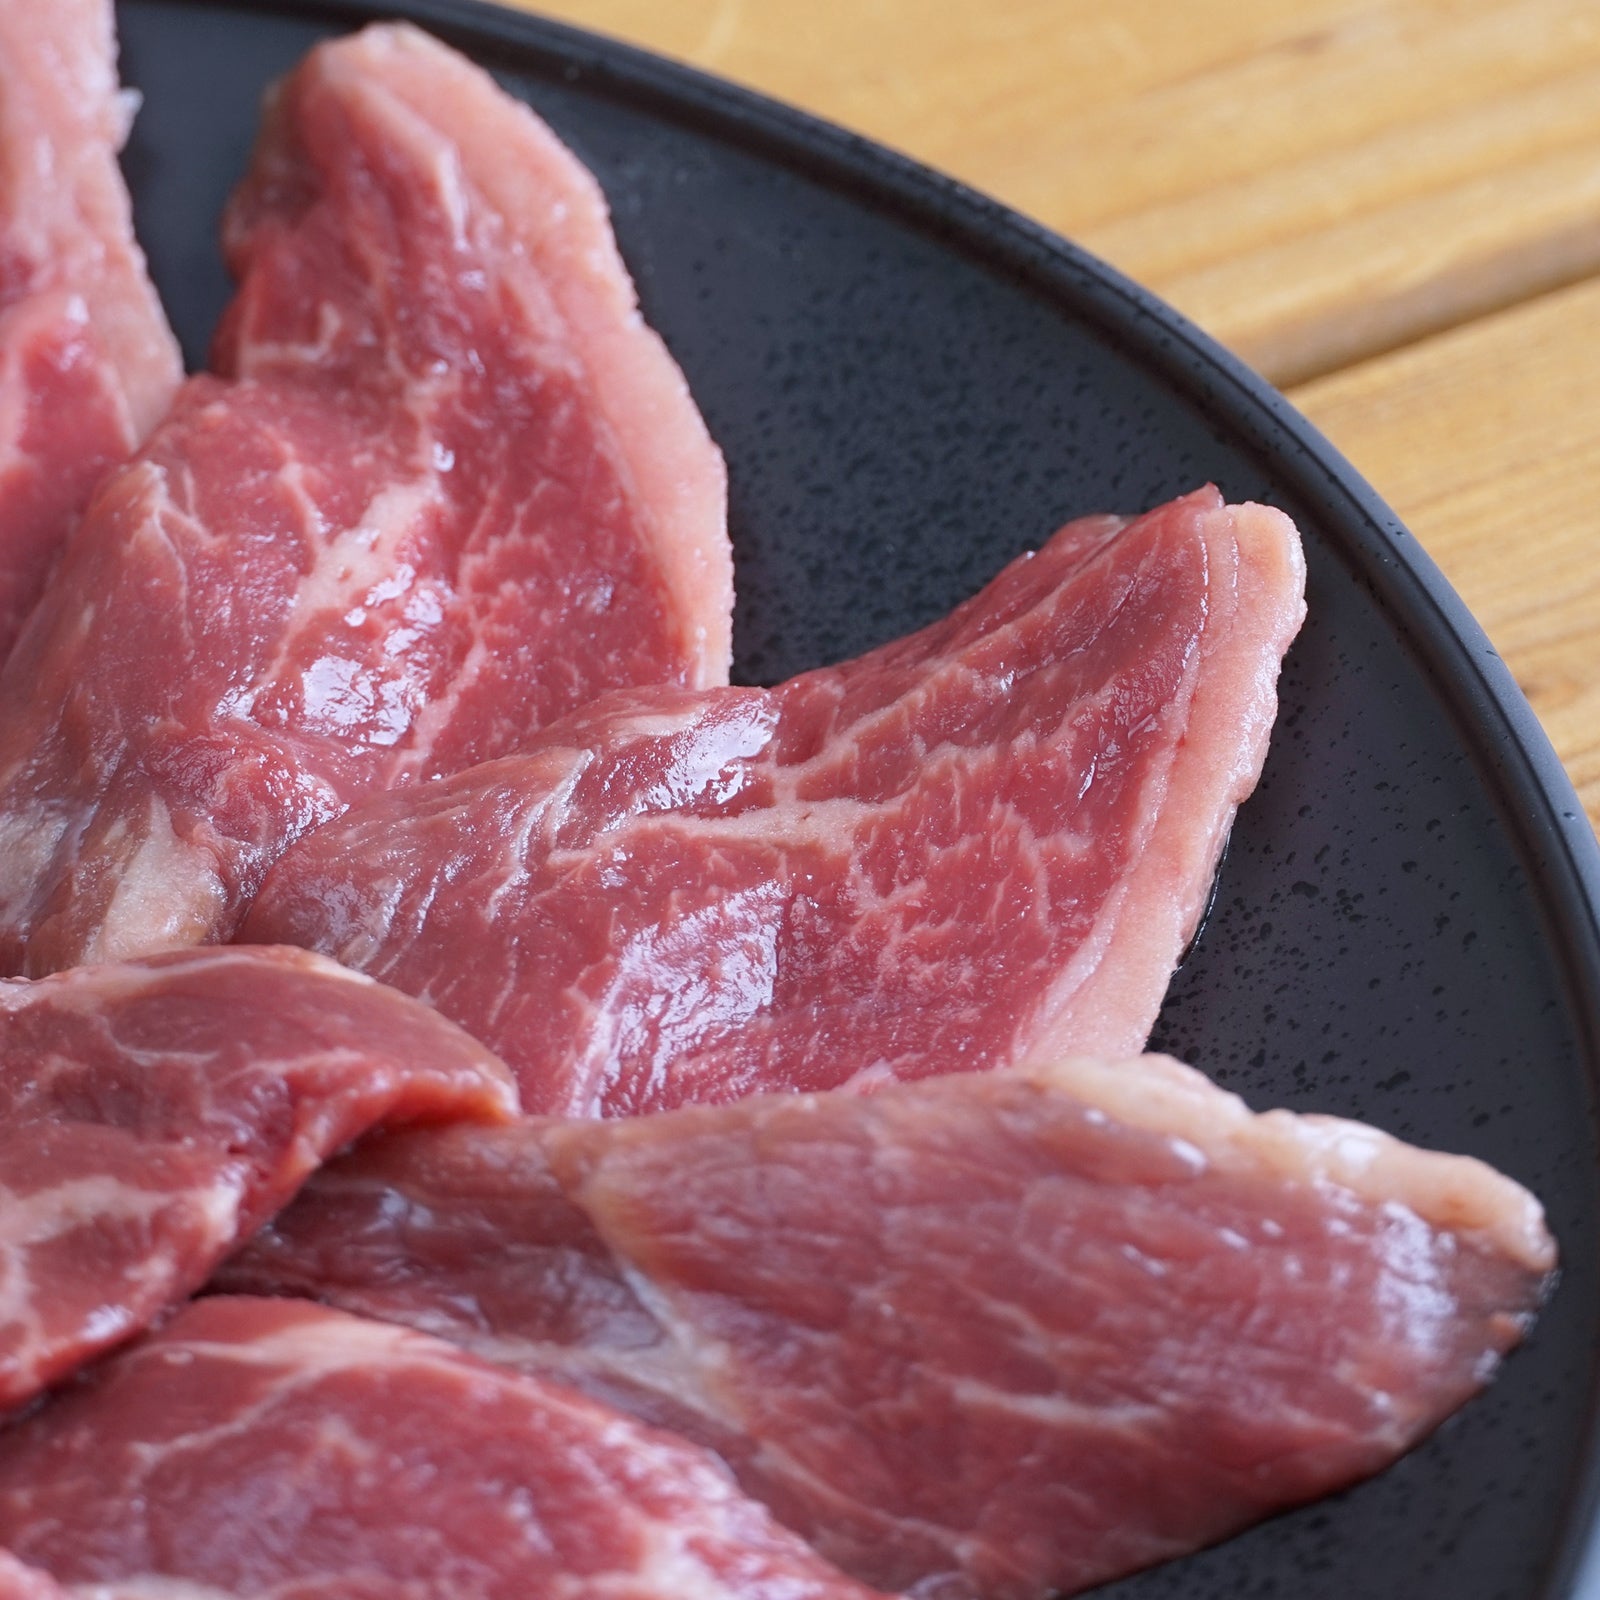 プレミアム グレインフェッドビーフ 霜降り 牛肉 イチボ 焼肉 スライス オーストラリア産 放牧牛 (300g) ホライズンファームズ